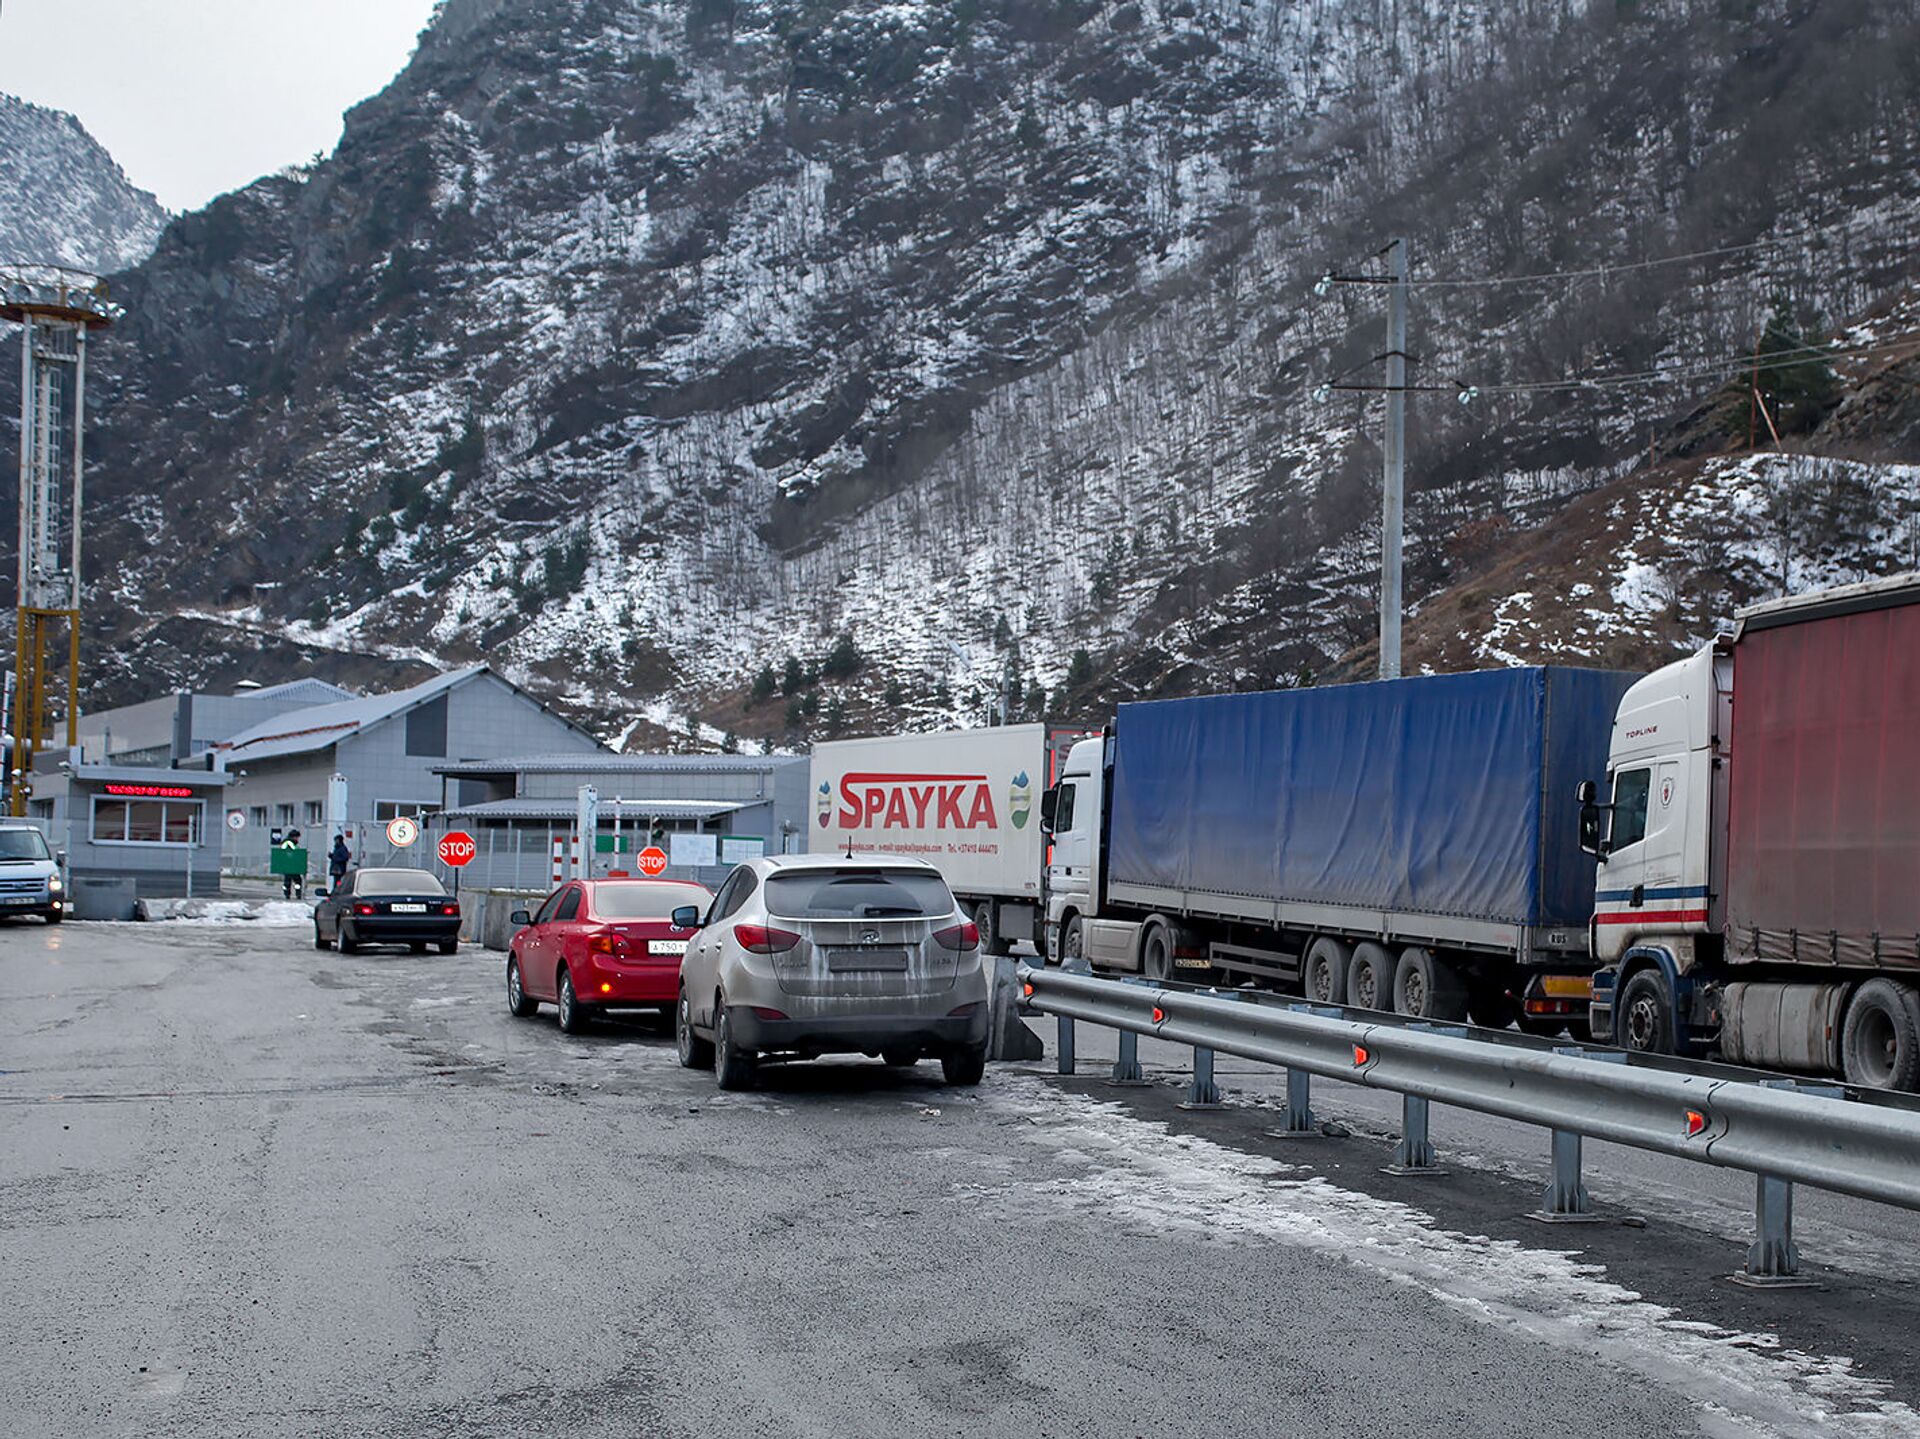 Автодорога Степанцминда-Ларс закрыта для всех видов транспортных средств